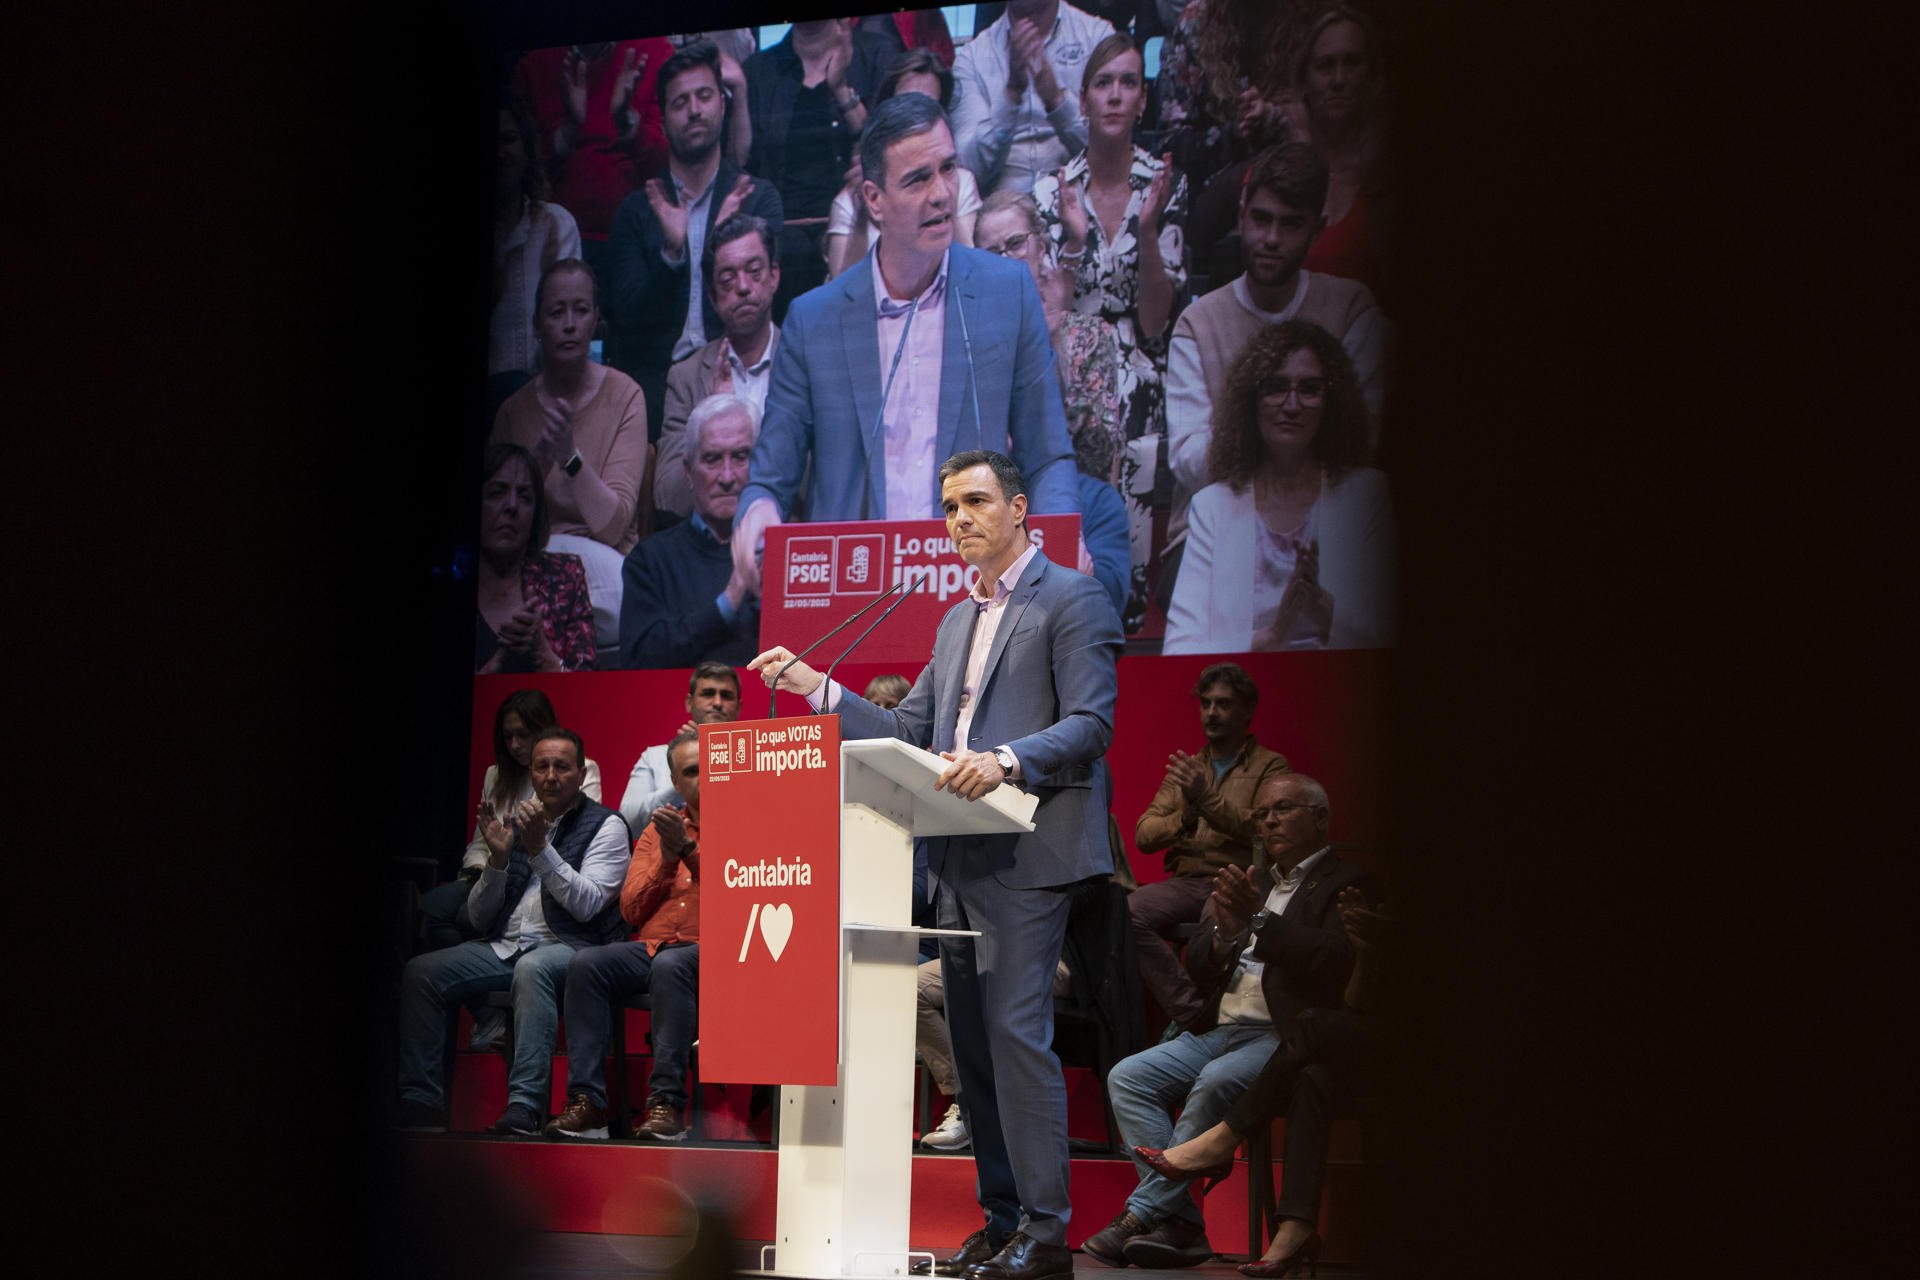 La compra de votos por correo dinamita la recta final de la campaña del PSOE